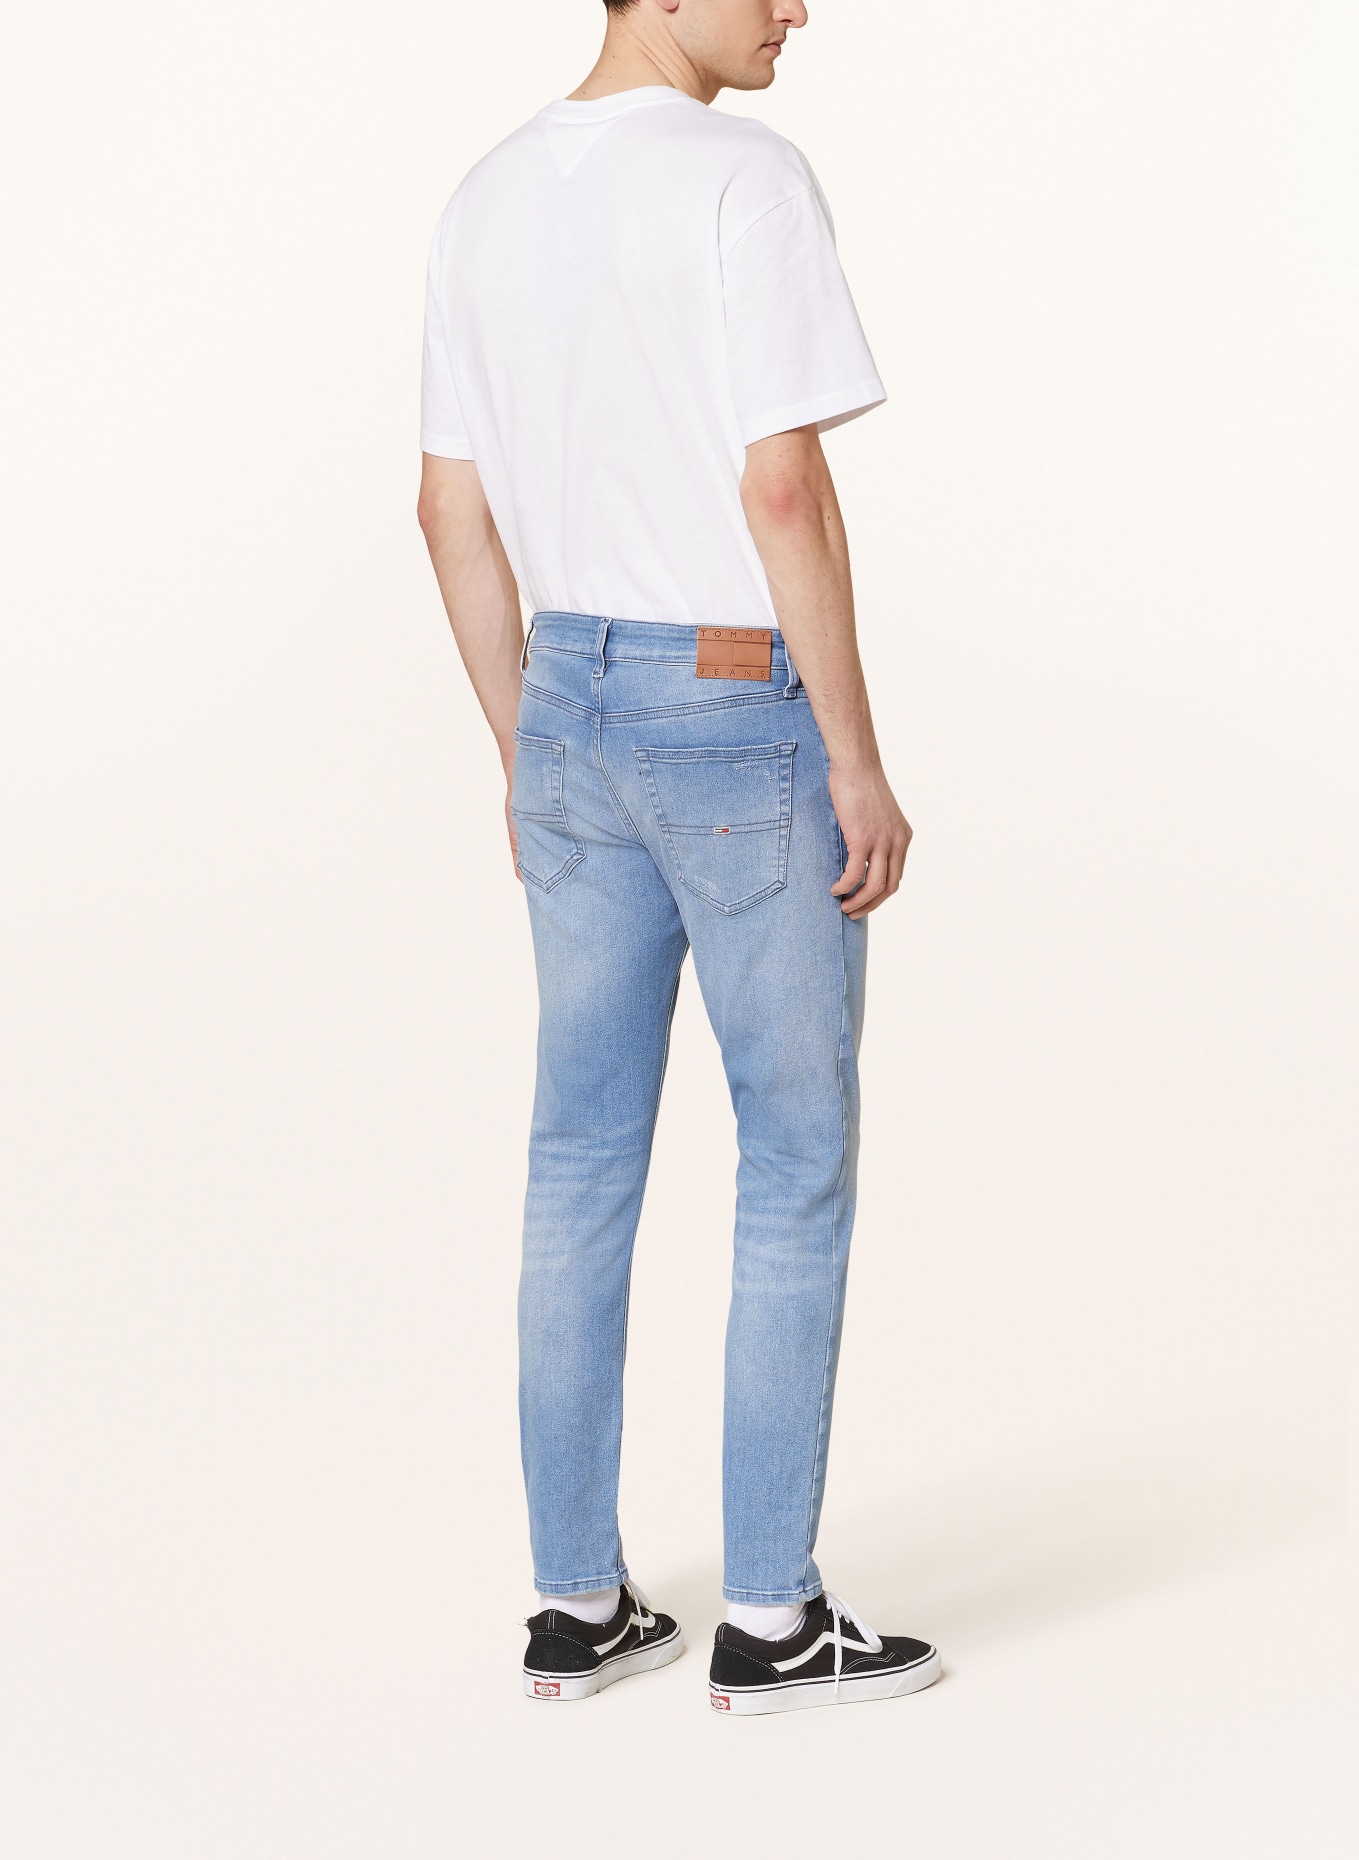 TOMMY JEANS Jeans AUSTIN Slim Tapered Fit, Farbe: 1A5 Denim Medium (Bild 3)